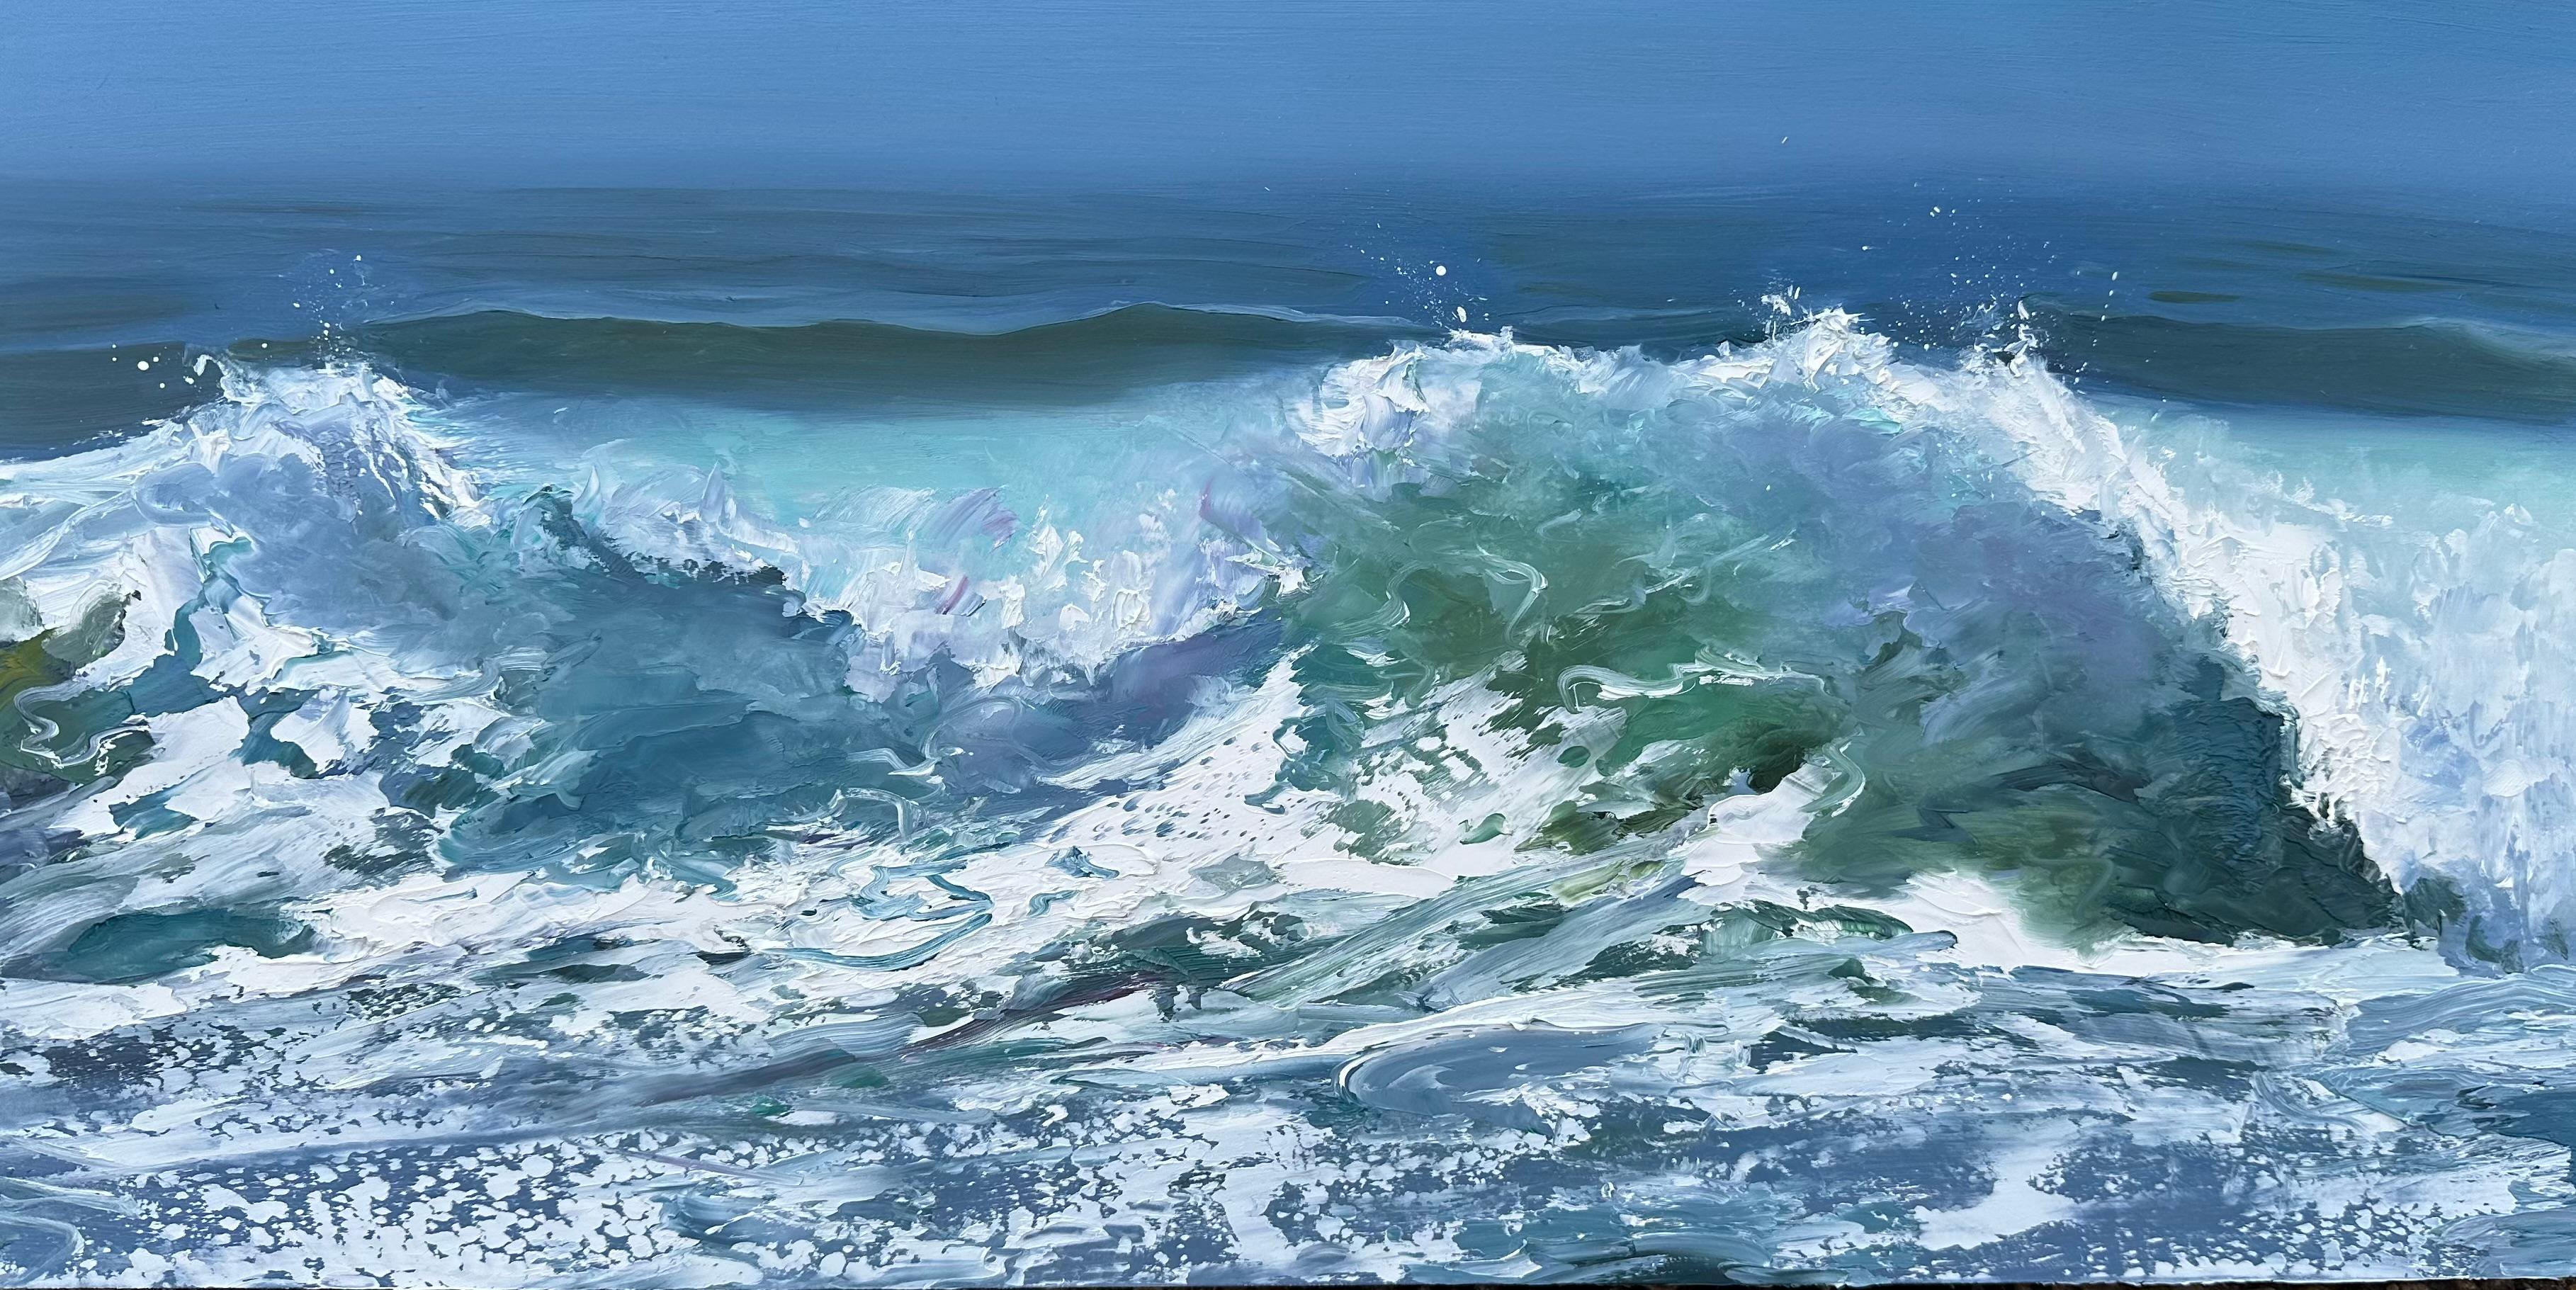 Whitney Knapp Landscape Painting – „Culmination“, ein Landschafts-Ölgemälde mit zerstürzenden Wellen